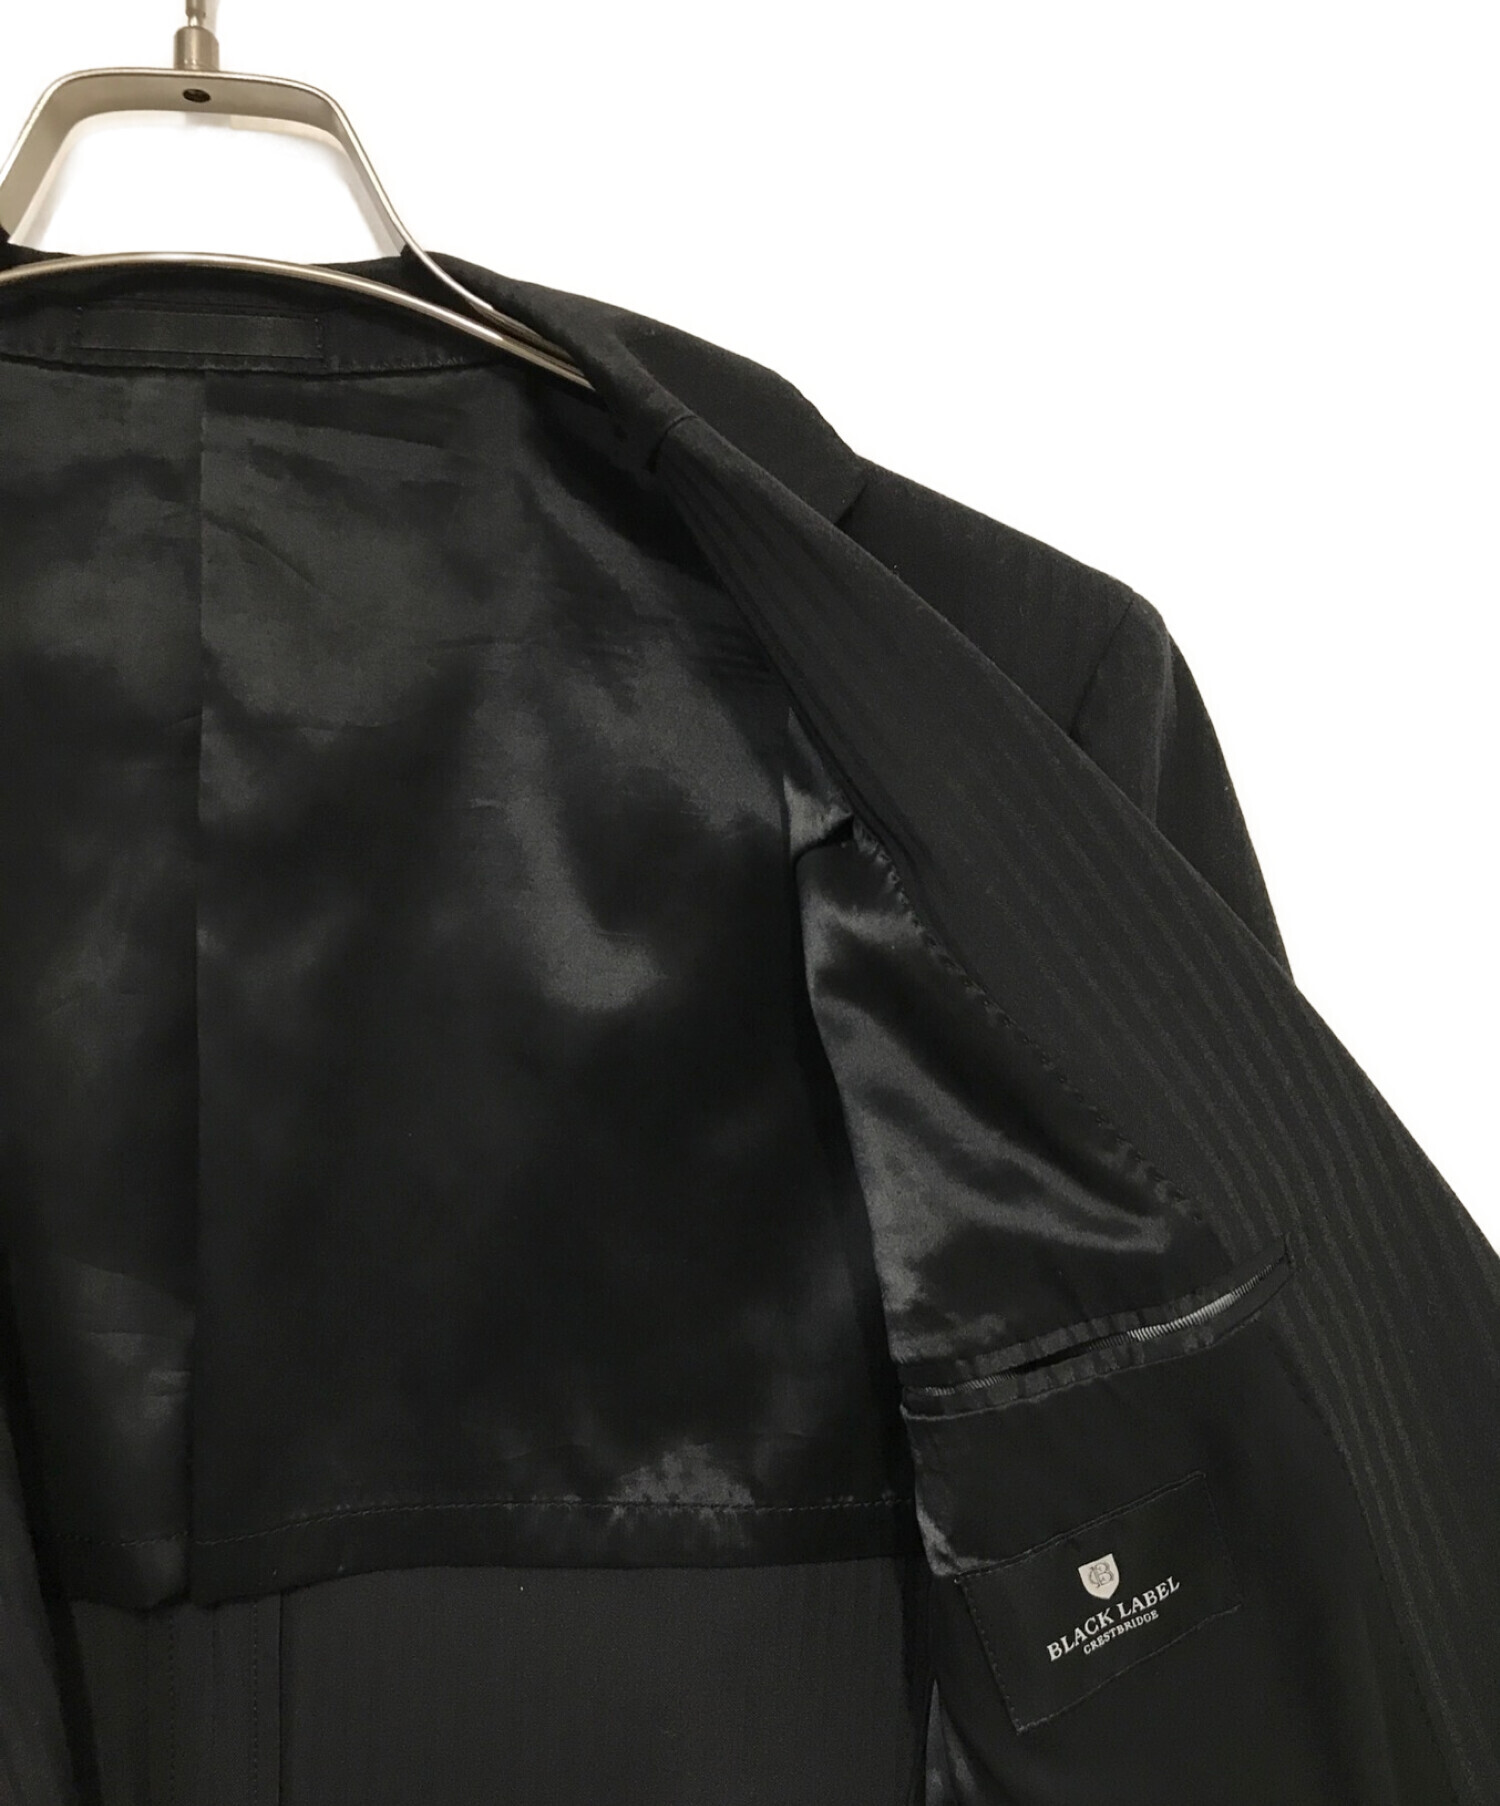 BLACK LABEL CRESTBRIDGE (ブラックレーベル クレストブリッジ) セットアップスーツ ブラック サイズ:40R